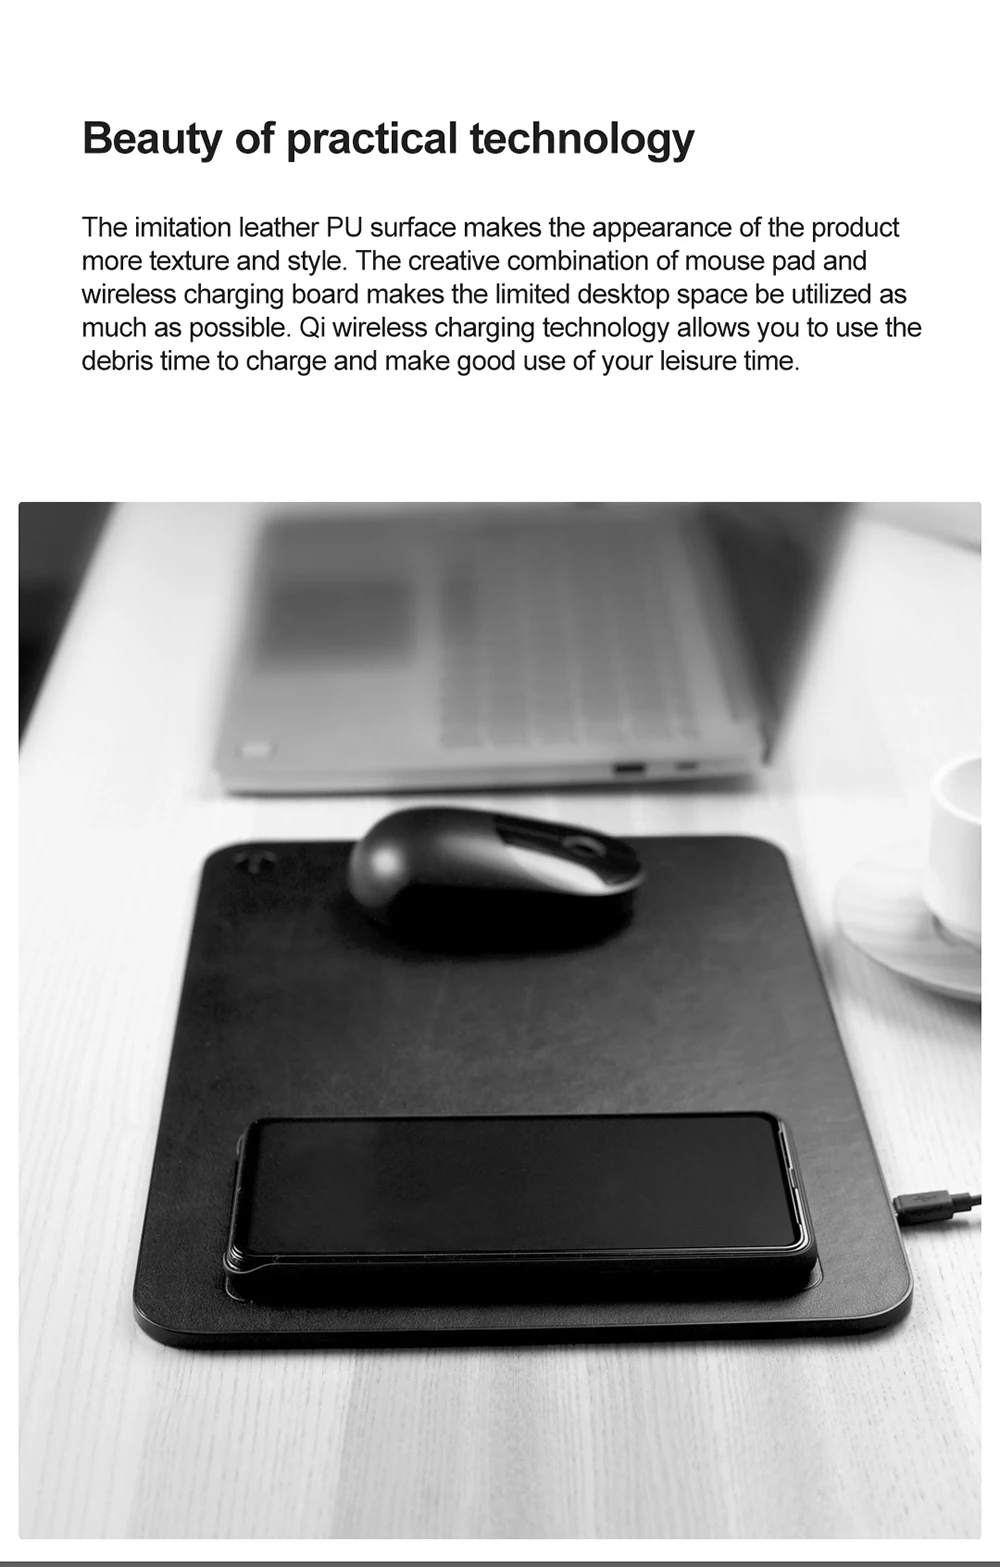 Xiaomi MIIIW офисный ультратонкий коврик для мыши с поддержкой QI беспроводной зарядки телефона нескользящий коврик для мыши из искусственной кожи PU Коврик для мыши